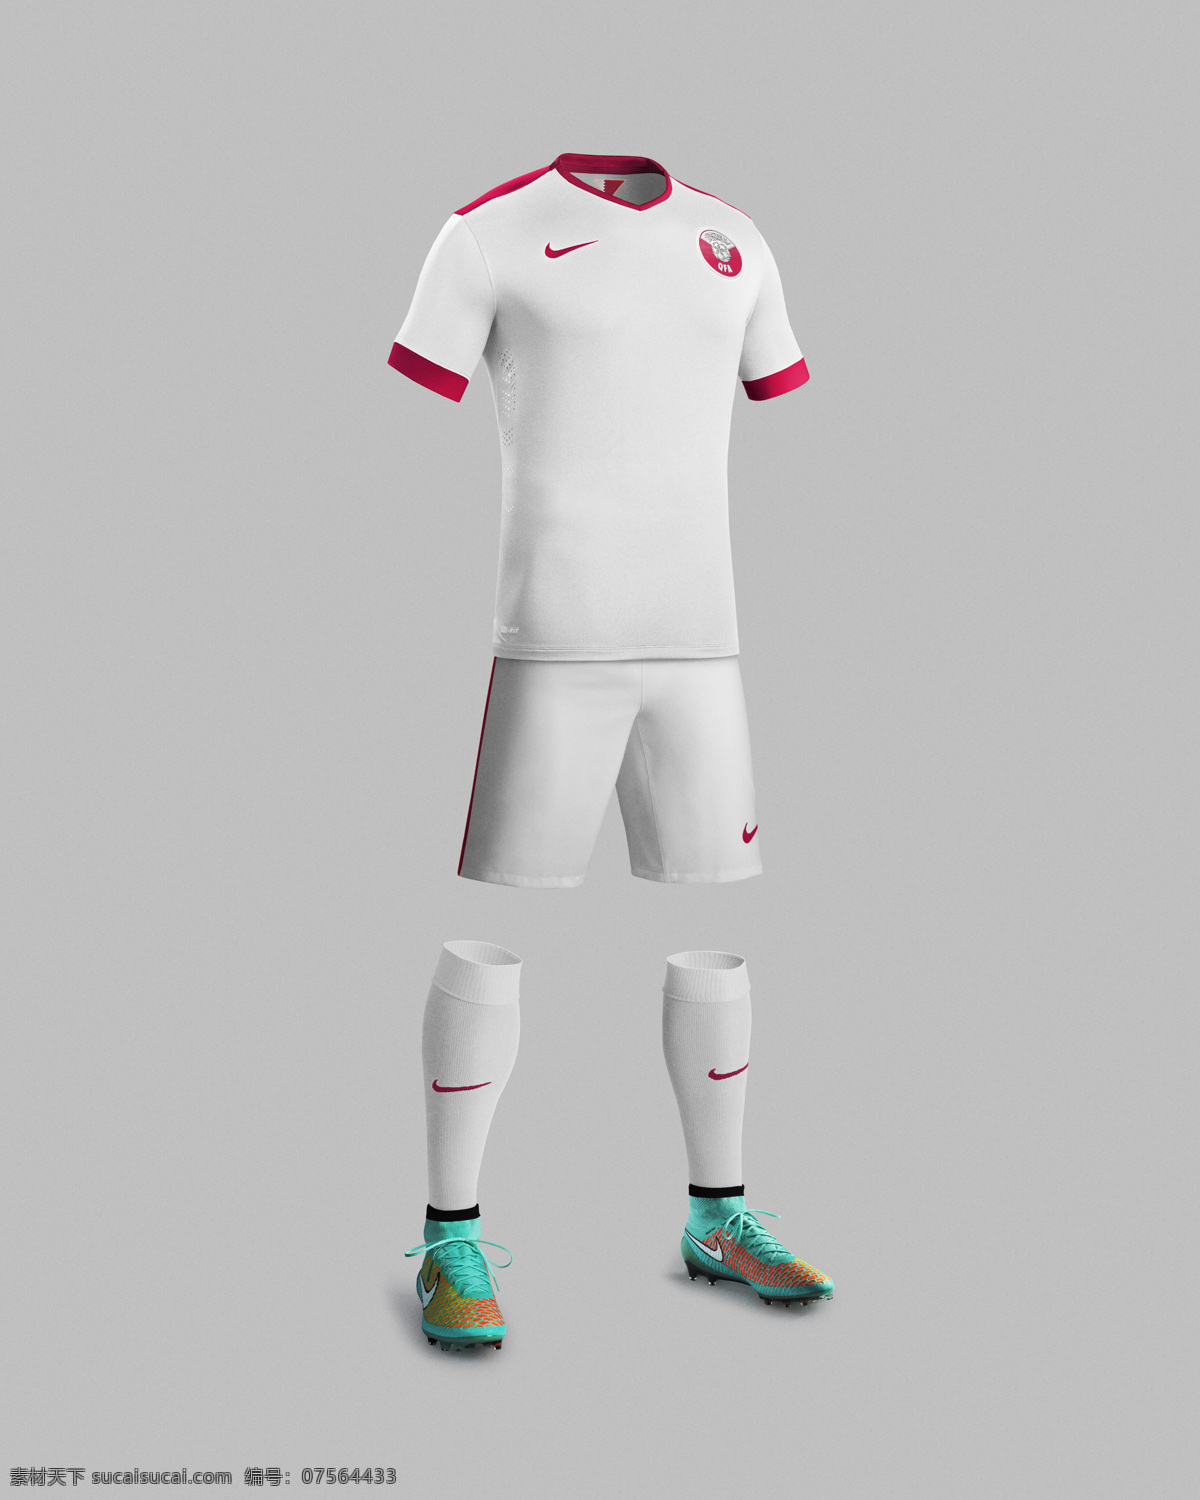 卡塔尔 国家队 队服 广告 nike 宣传 生活百科 体育用品